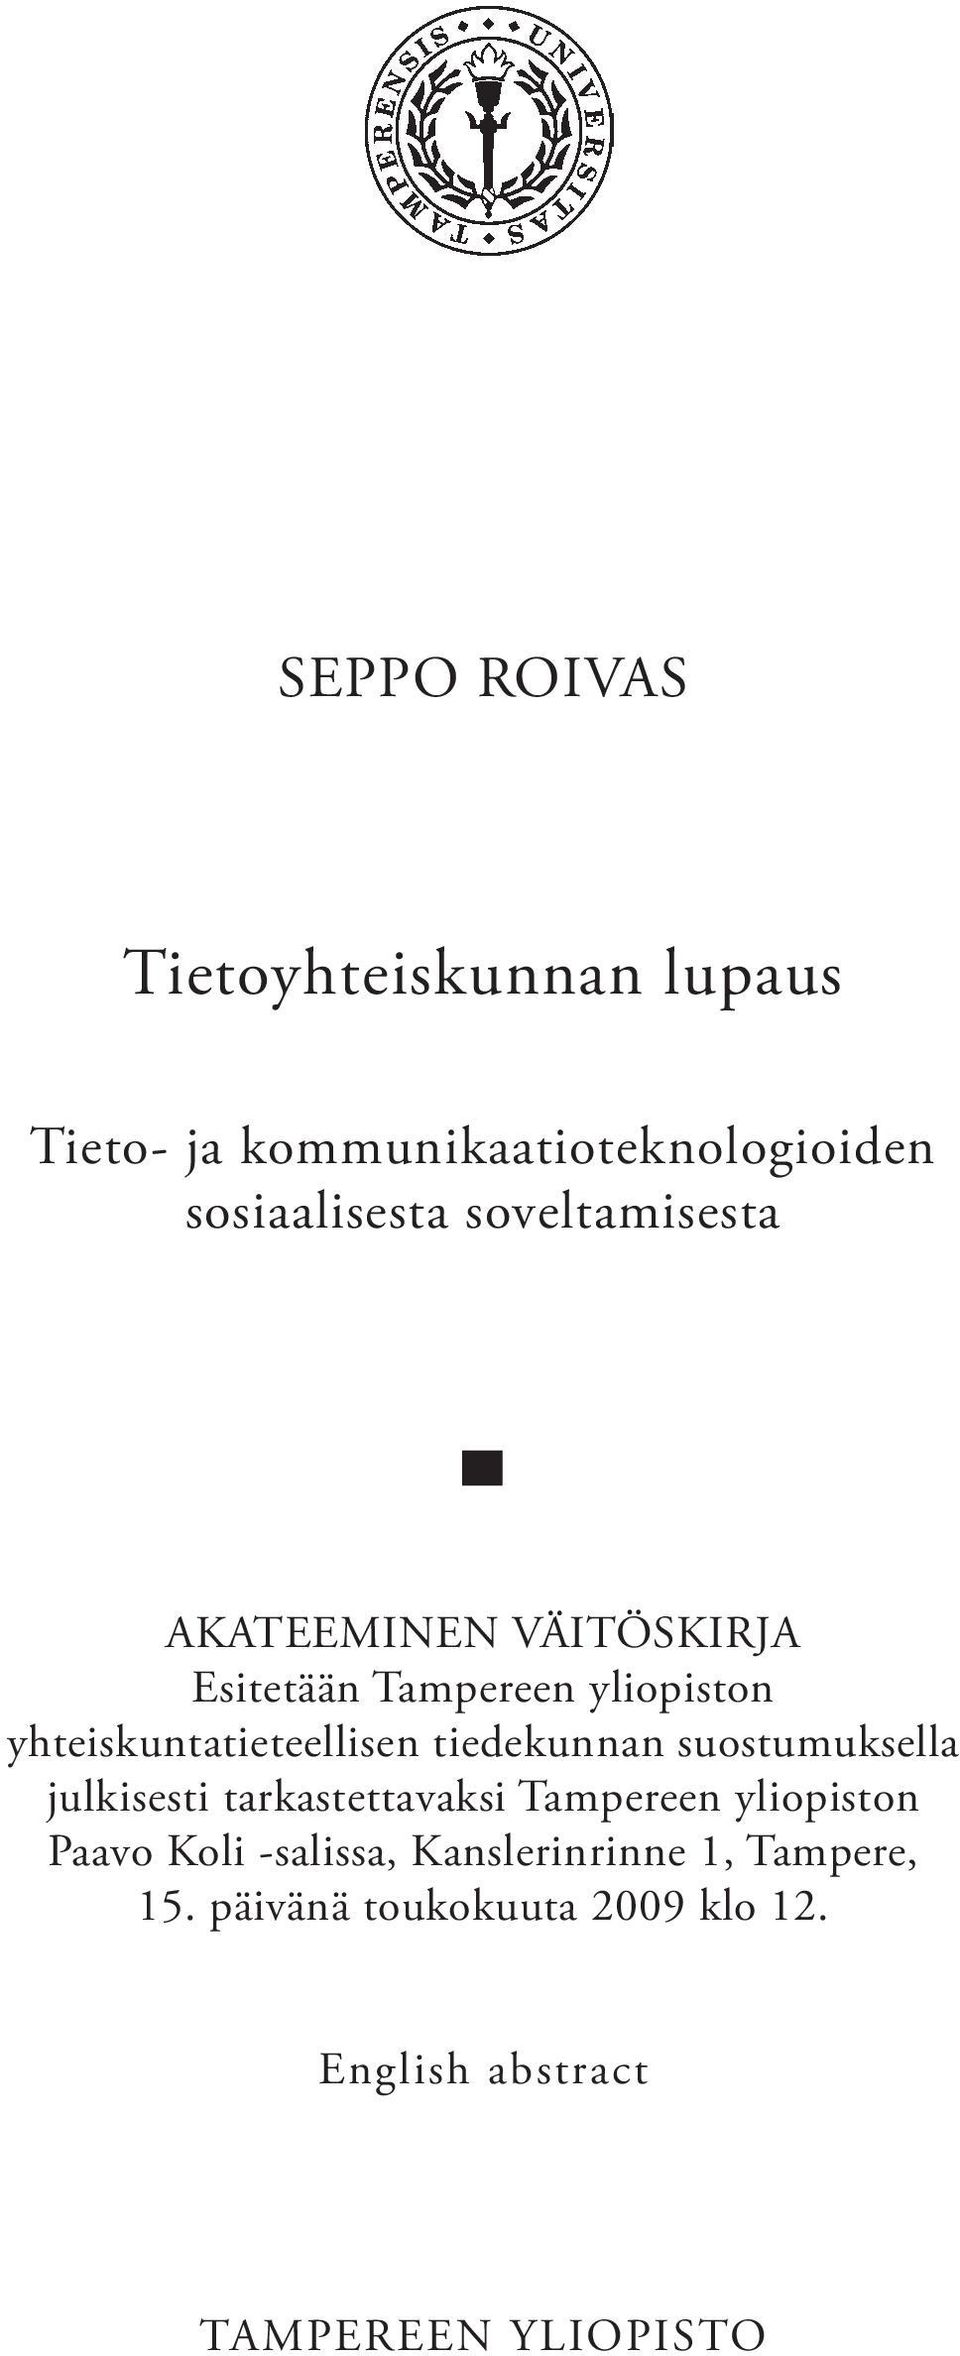 tiedekunnan suostumuksella julkisesti tarkastettavaksi Tampereen yliopiston Paavo Koli